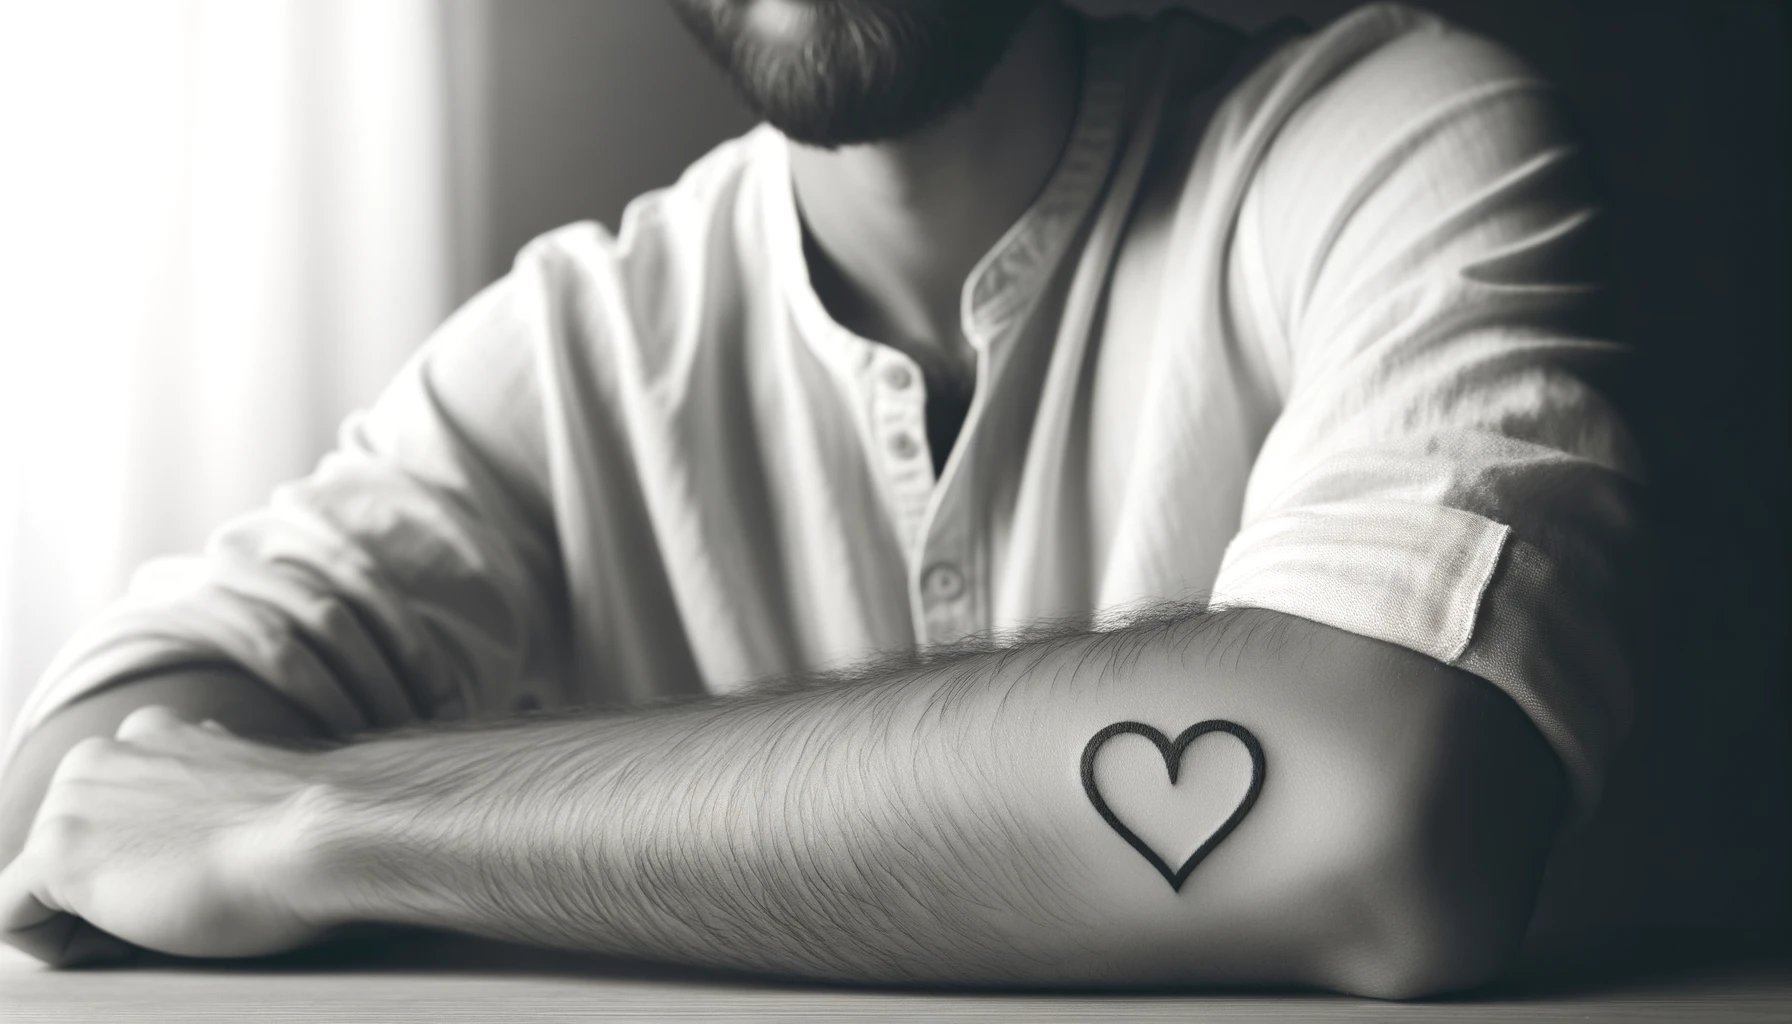 Mężczyzna w jasnej koszuli opiera łokieć na stole, eksponując tatuaż w kształcie serca na przedramieniu